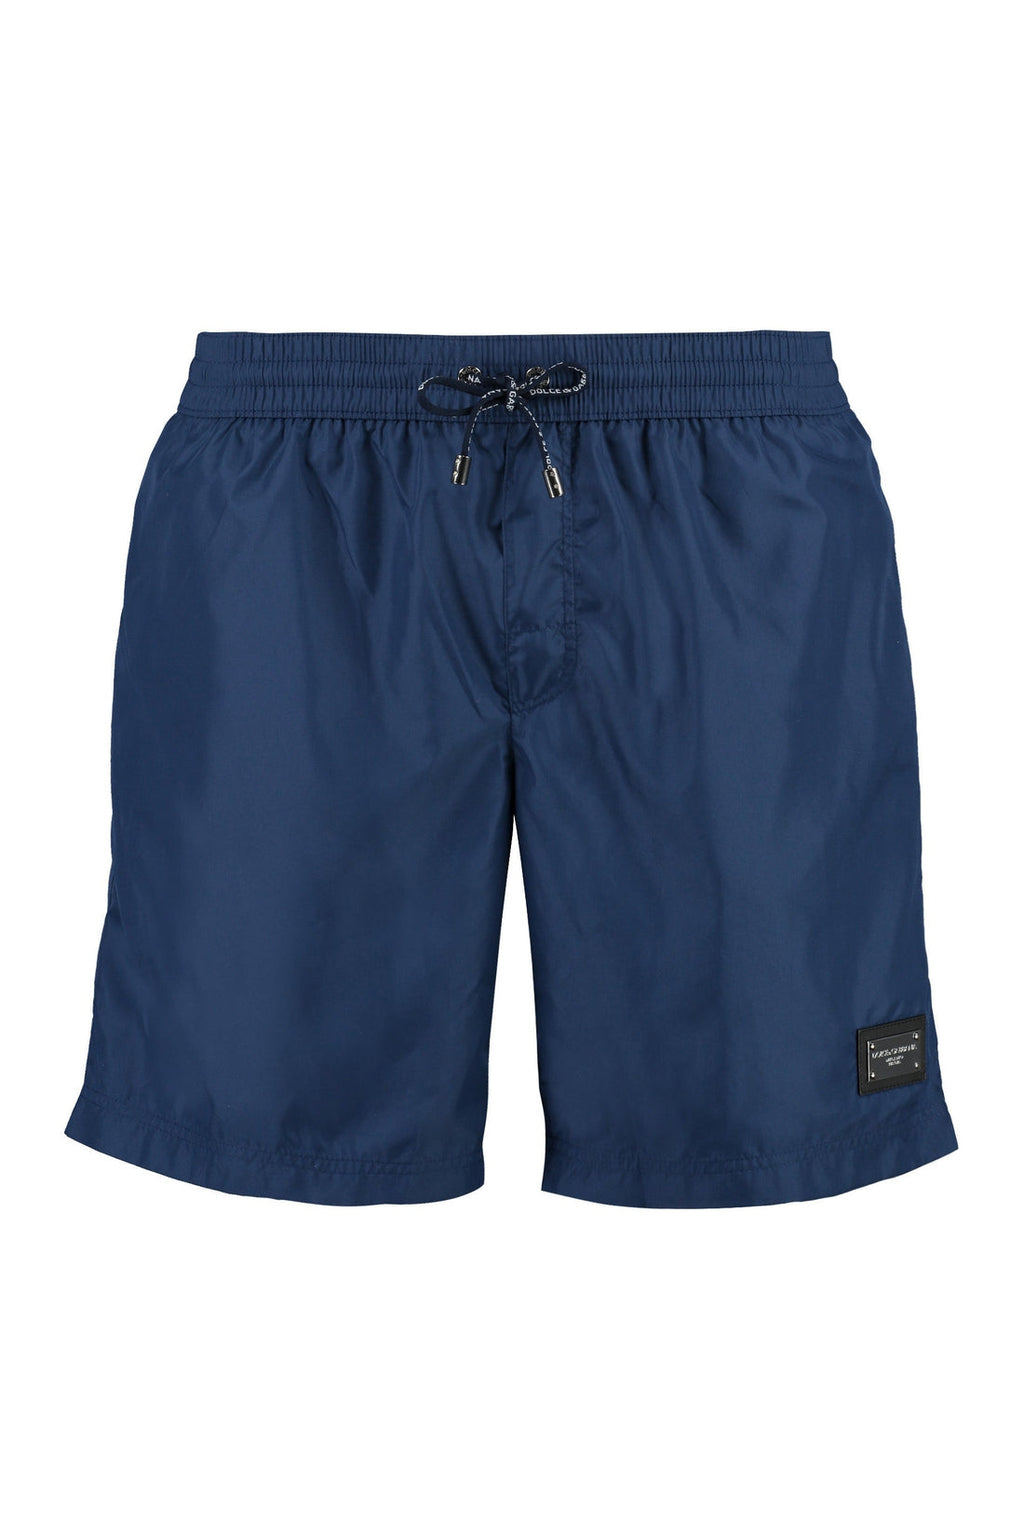 Dolce & Gabbana-OUTLET-SALE-Swim shorts-ARCHIVIST